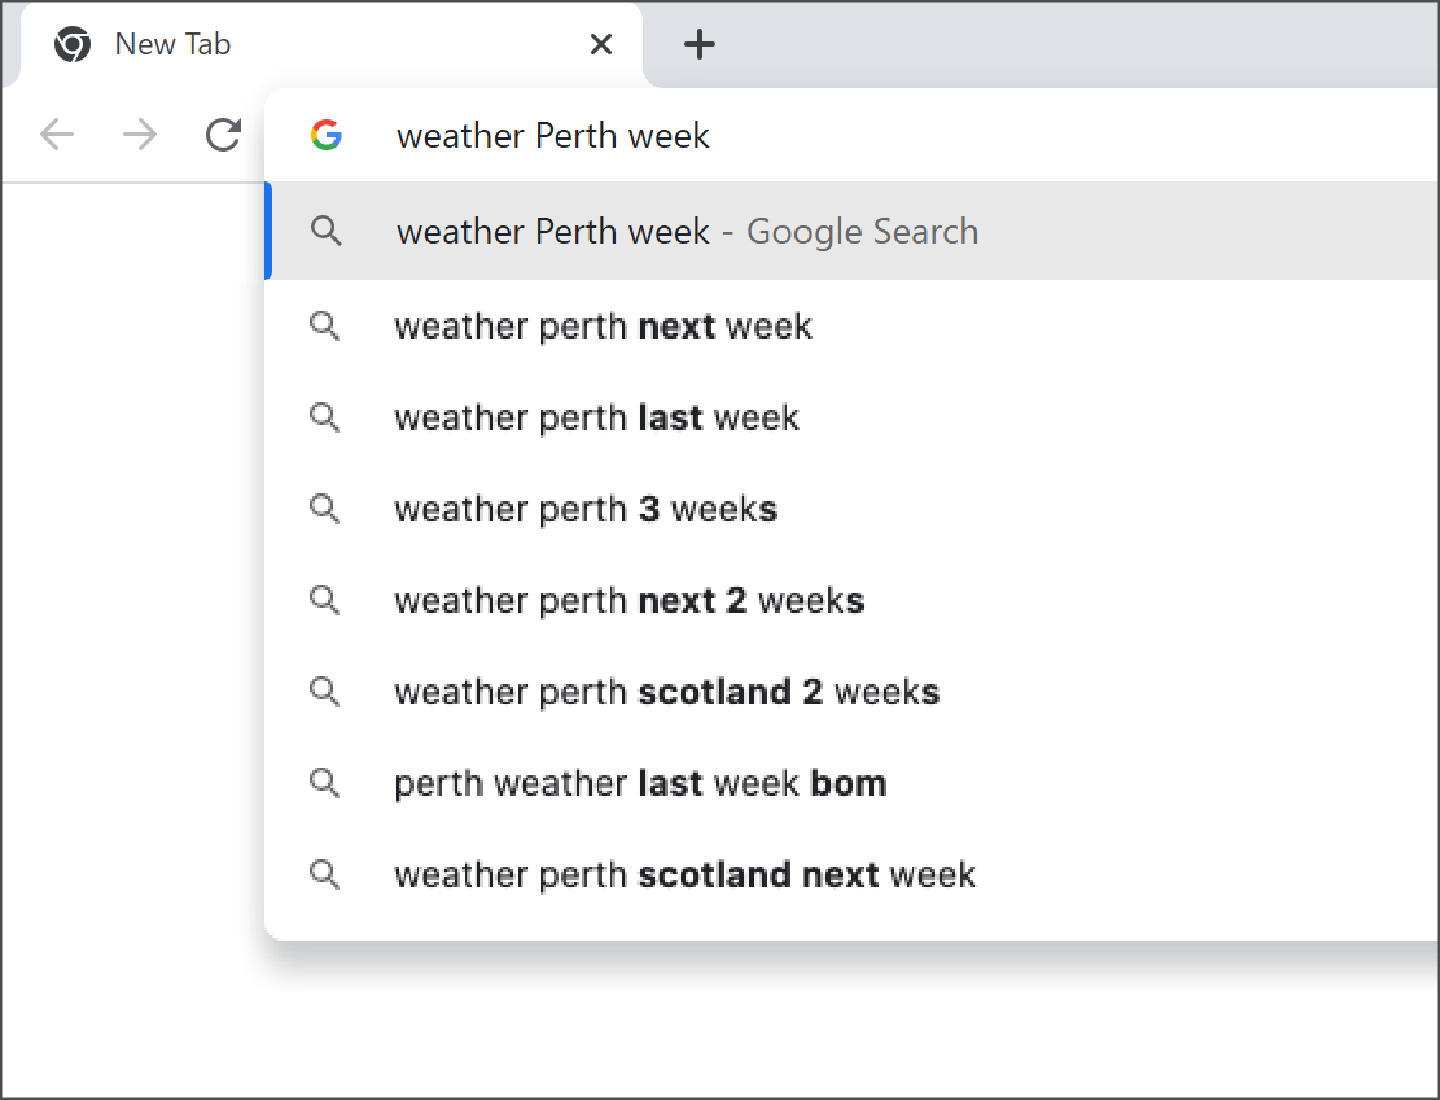 قائمة اقتراحات تظهر عندما نبدأ في الكتابة في البحث عن "الطقس بيرث أسبوع" (weather Perth week). 